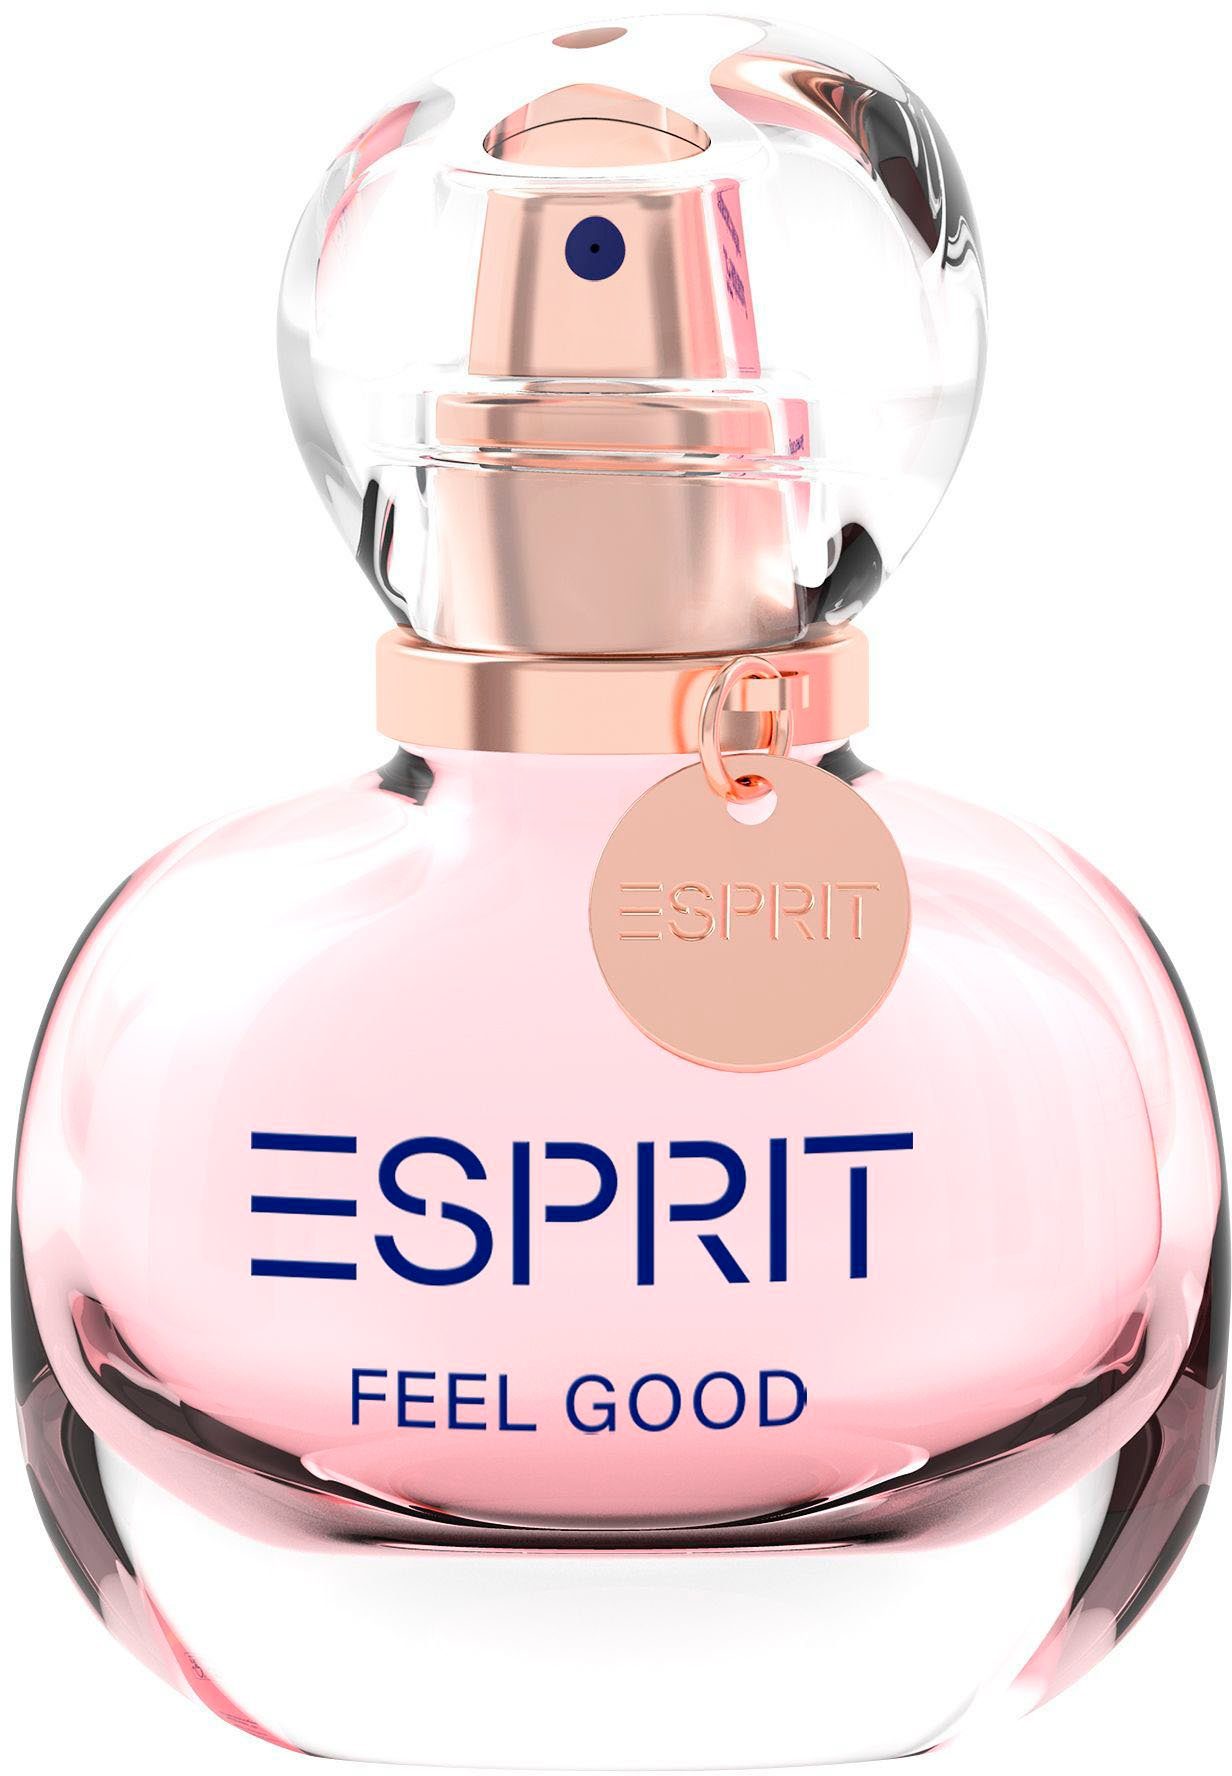 Esprit Eau de Parfum FEEL GOOD for her EdP 20 ml | Eau de Parfum